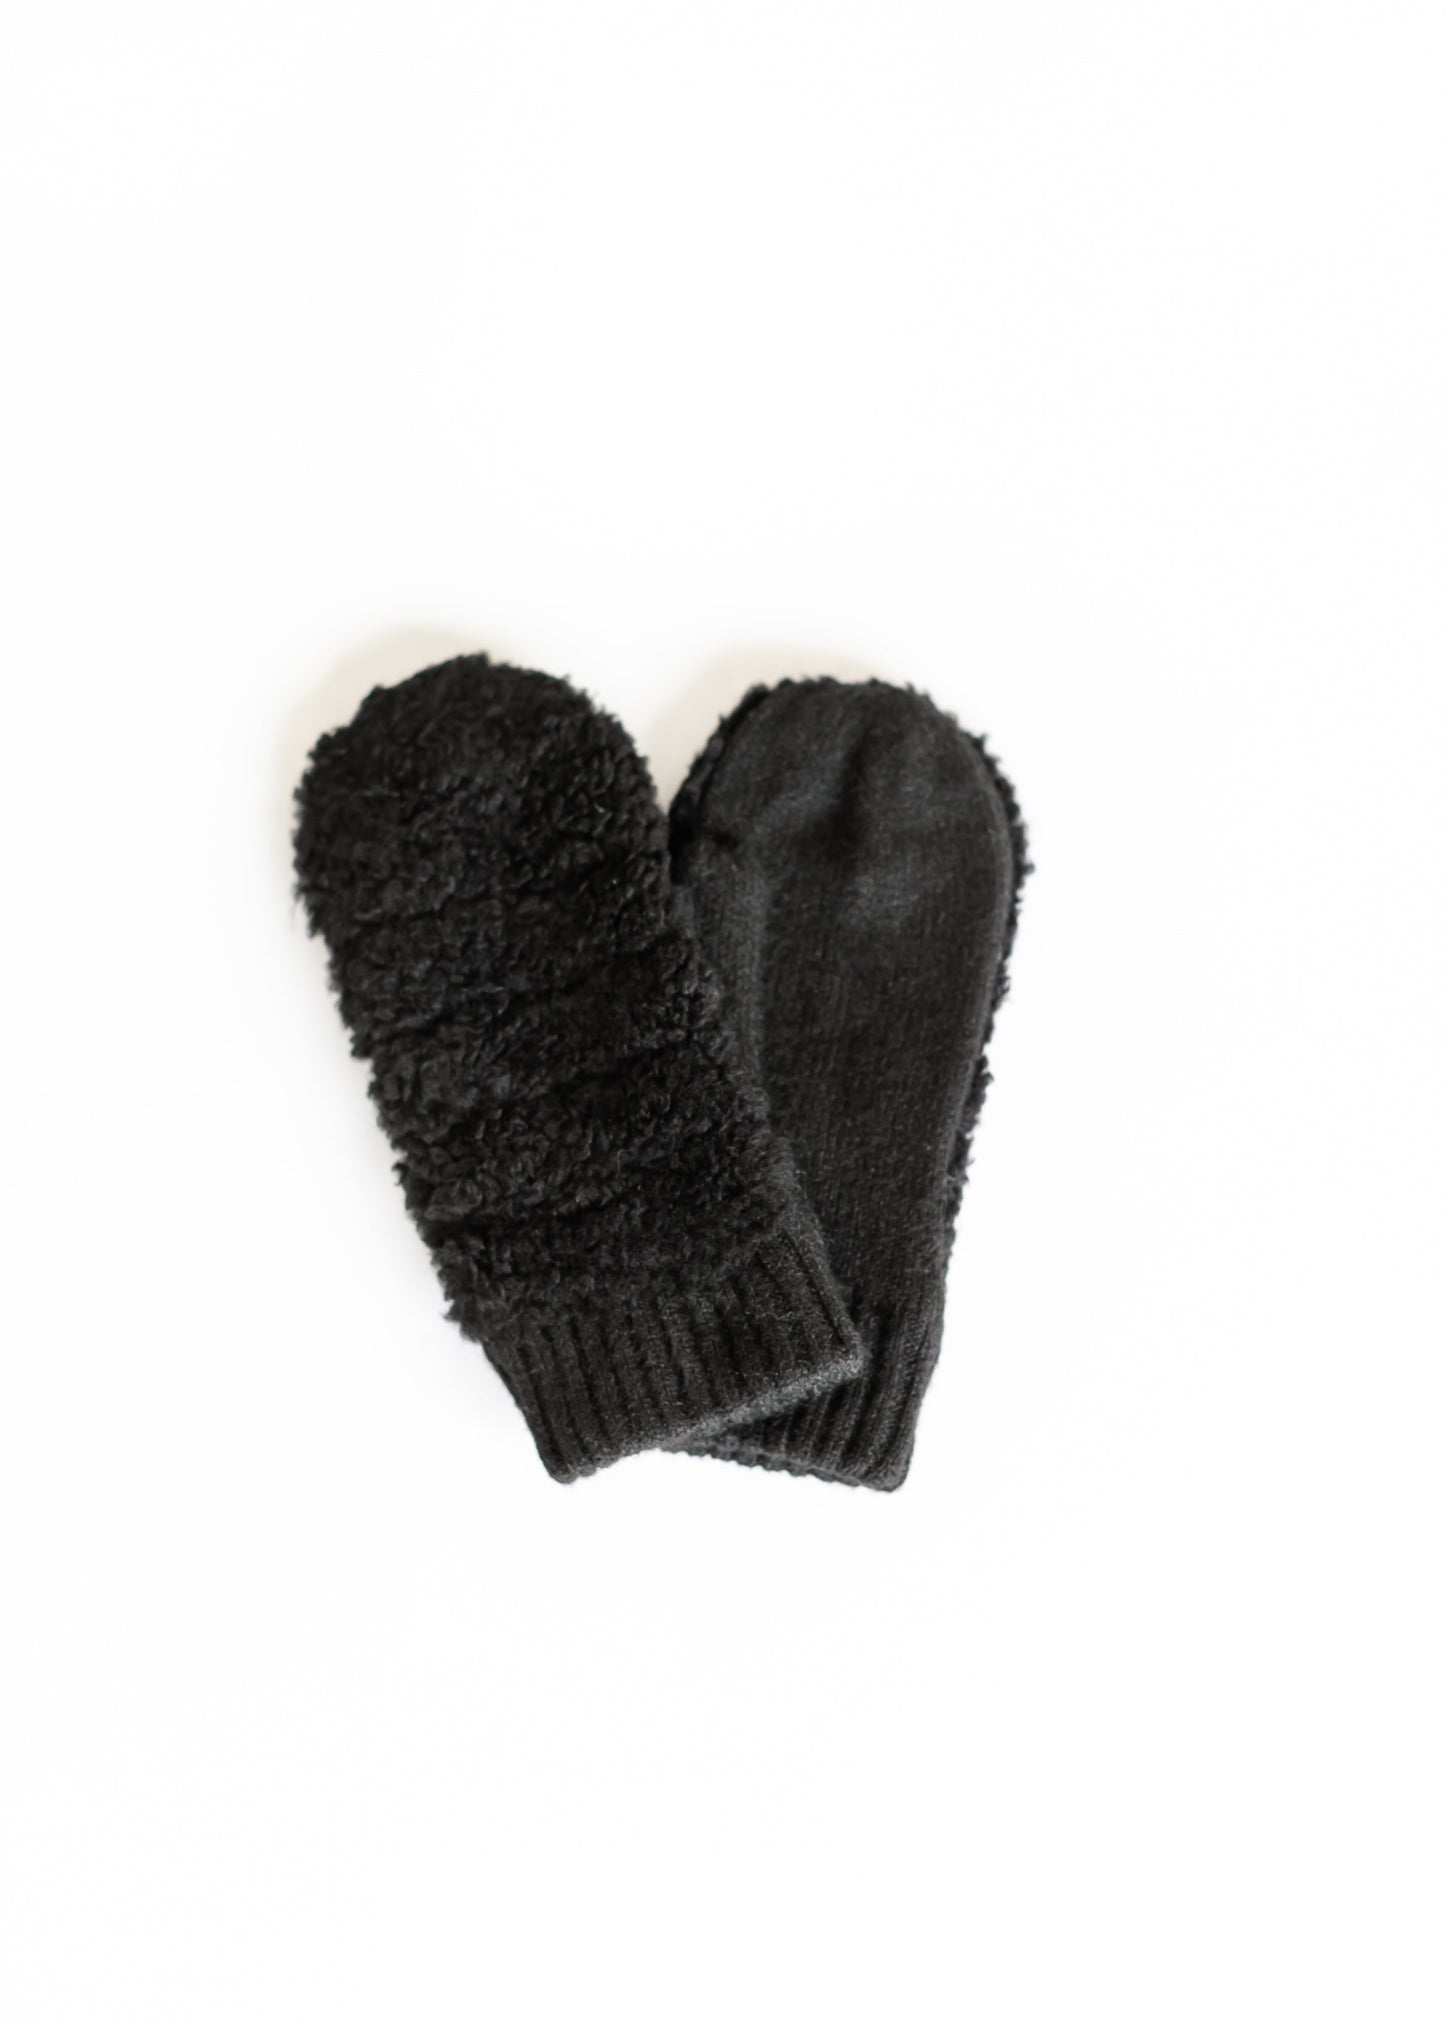 Knit Cuff Sherpa Mitten Accessories